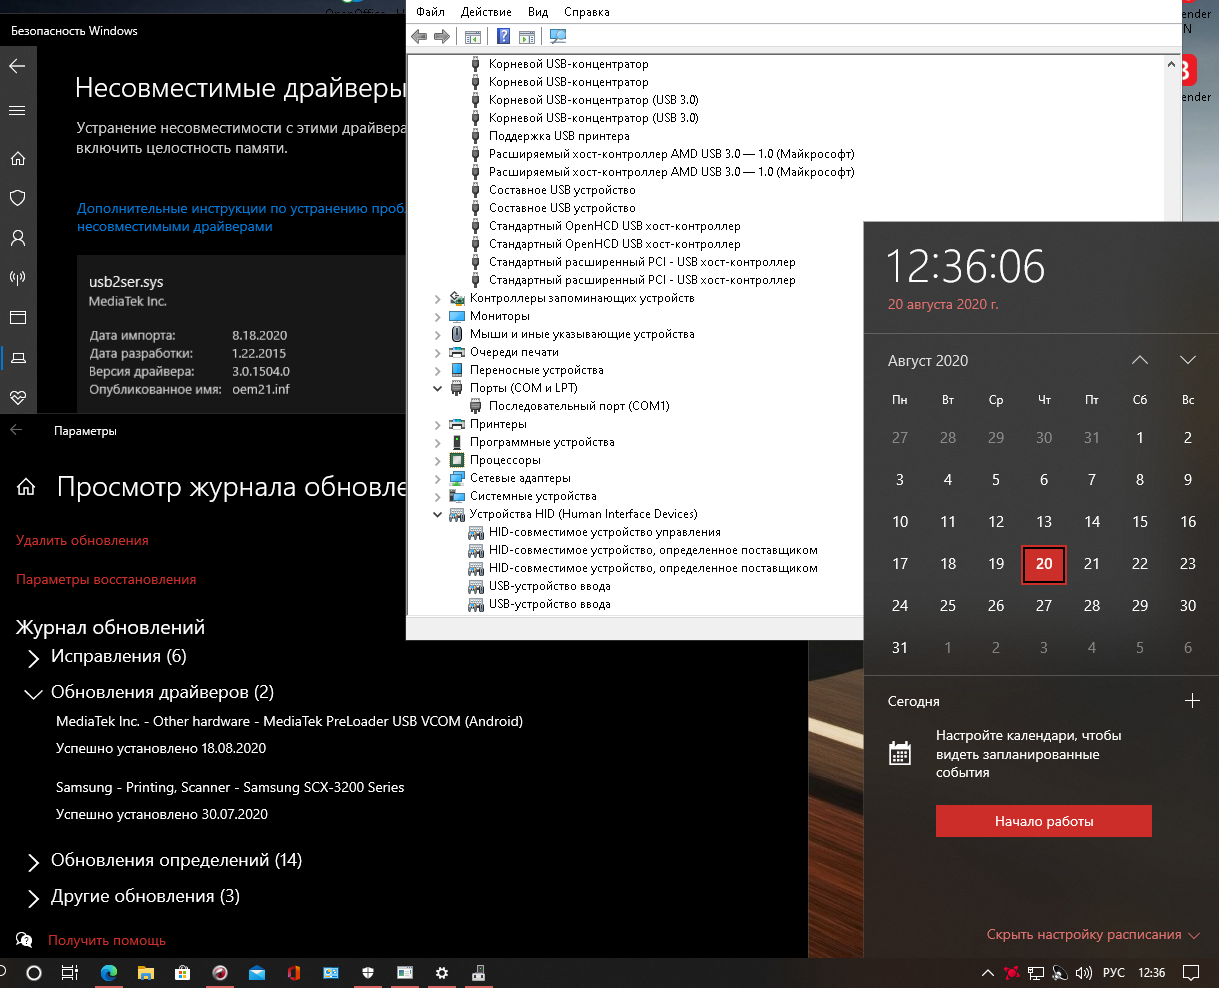 Безопасность Windows, несовместимость драйверов. как удалить MediaTek,Inc 640443de-c8ae-412c-8a09-09fdeea2bacf?upload=true.png